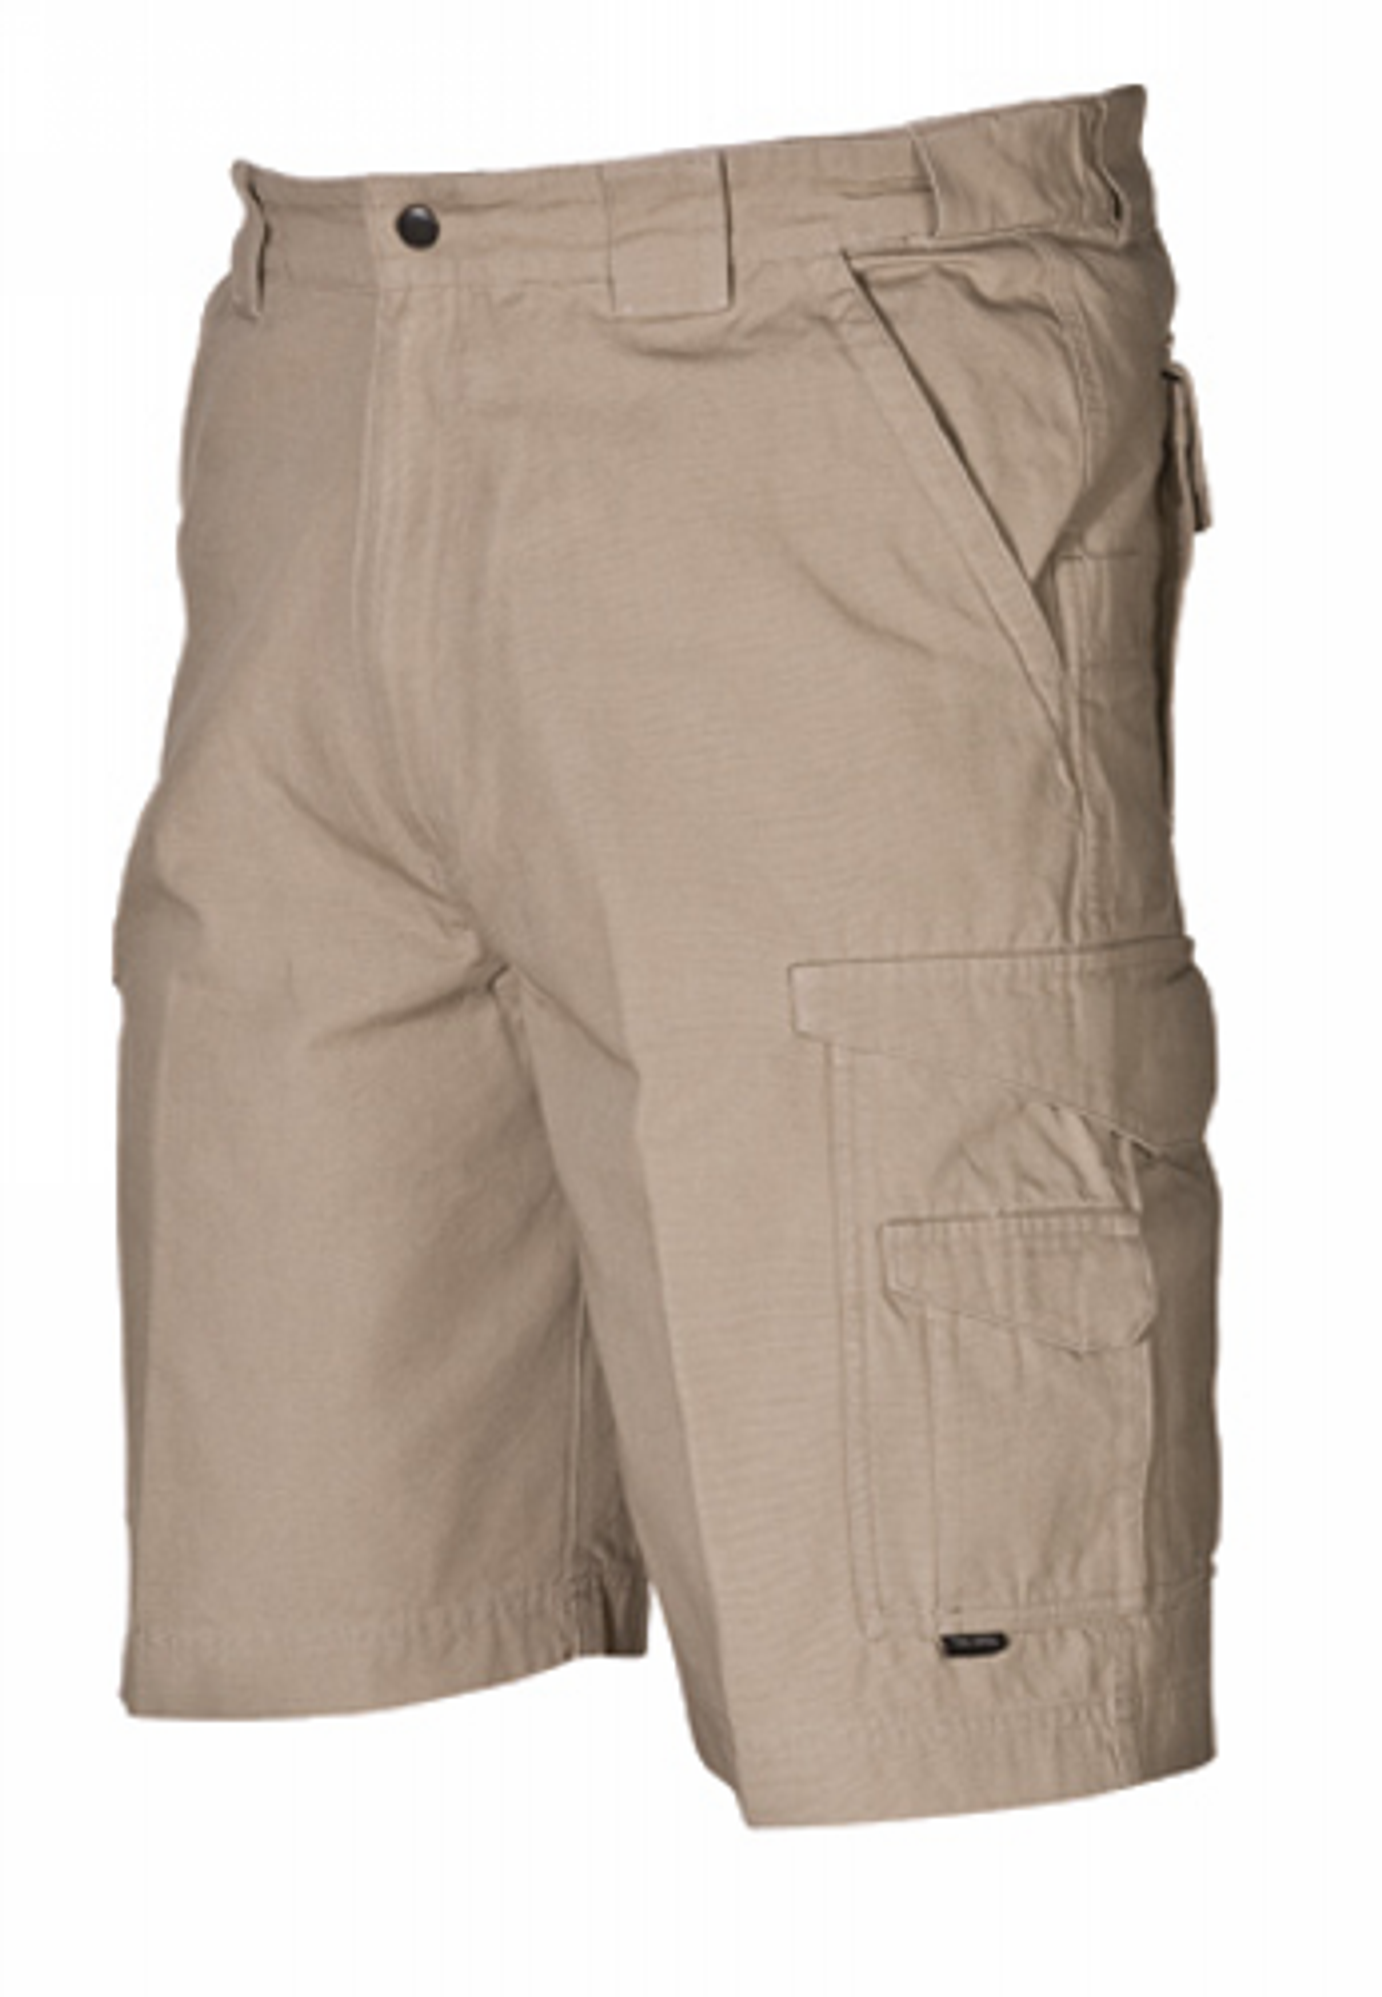 Original Tactical Shorts - KRTSP-4269008